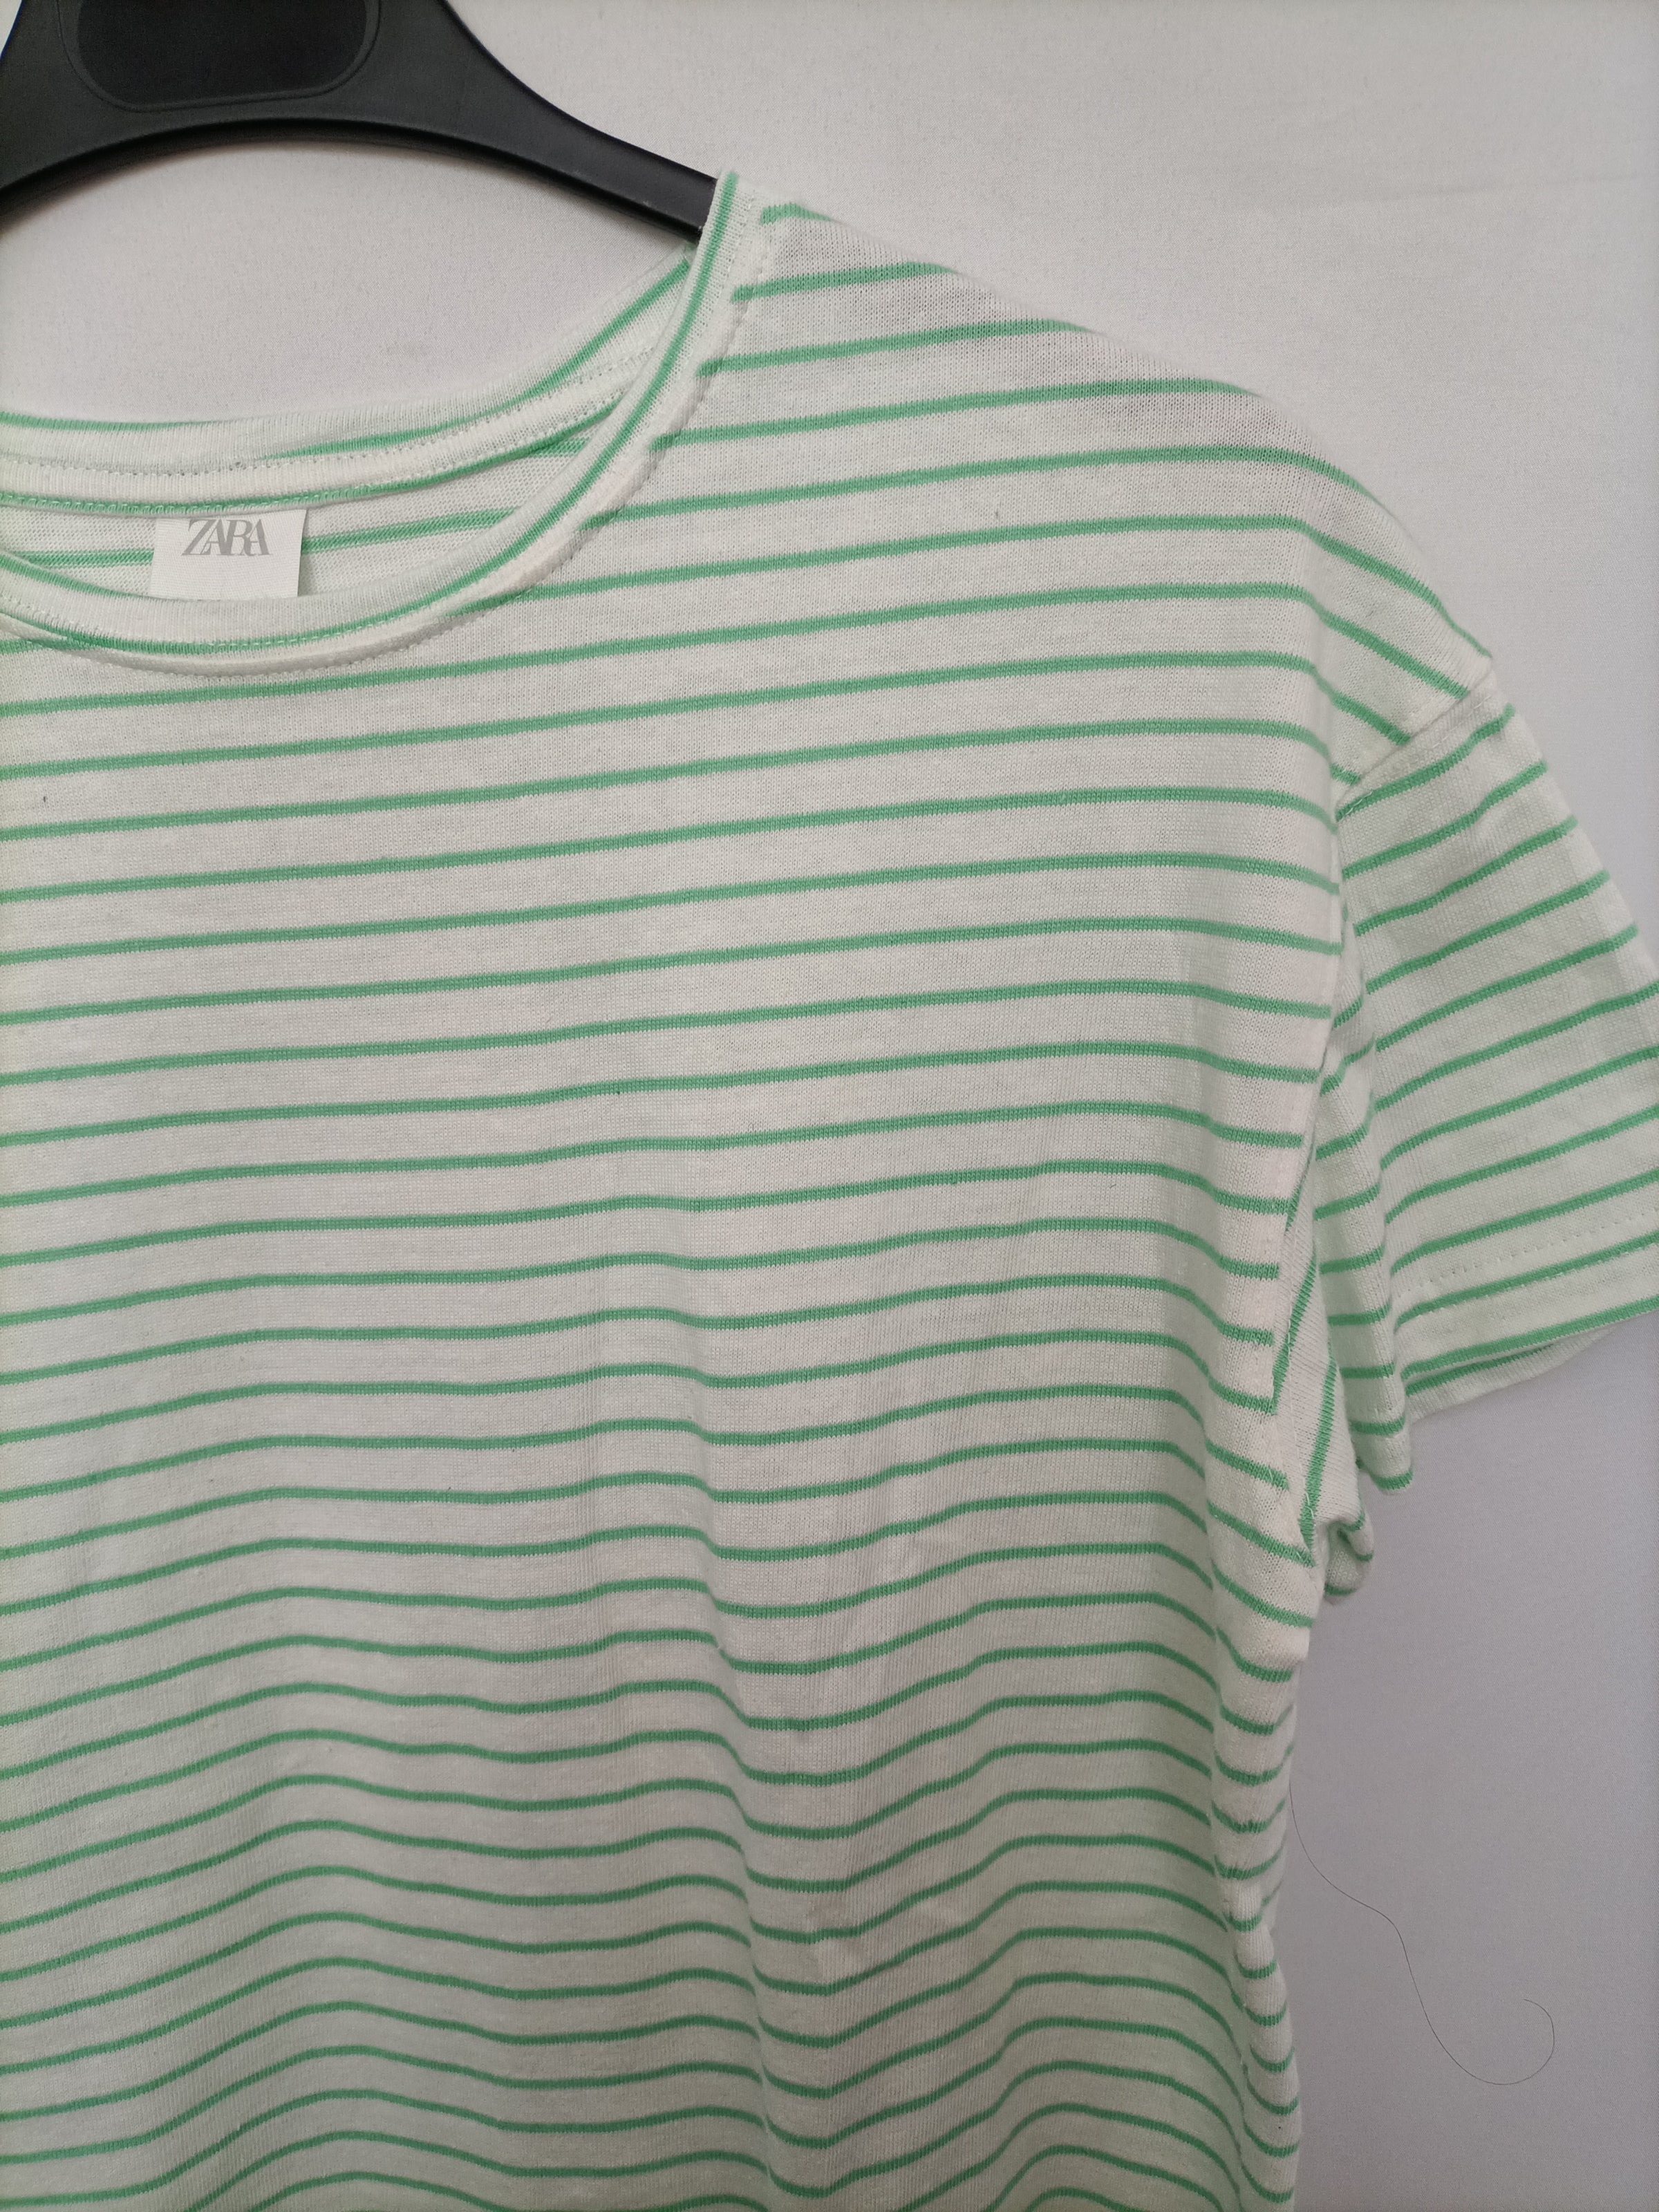 ZARA. Camiseta rayas verdes – Hibuy market